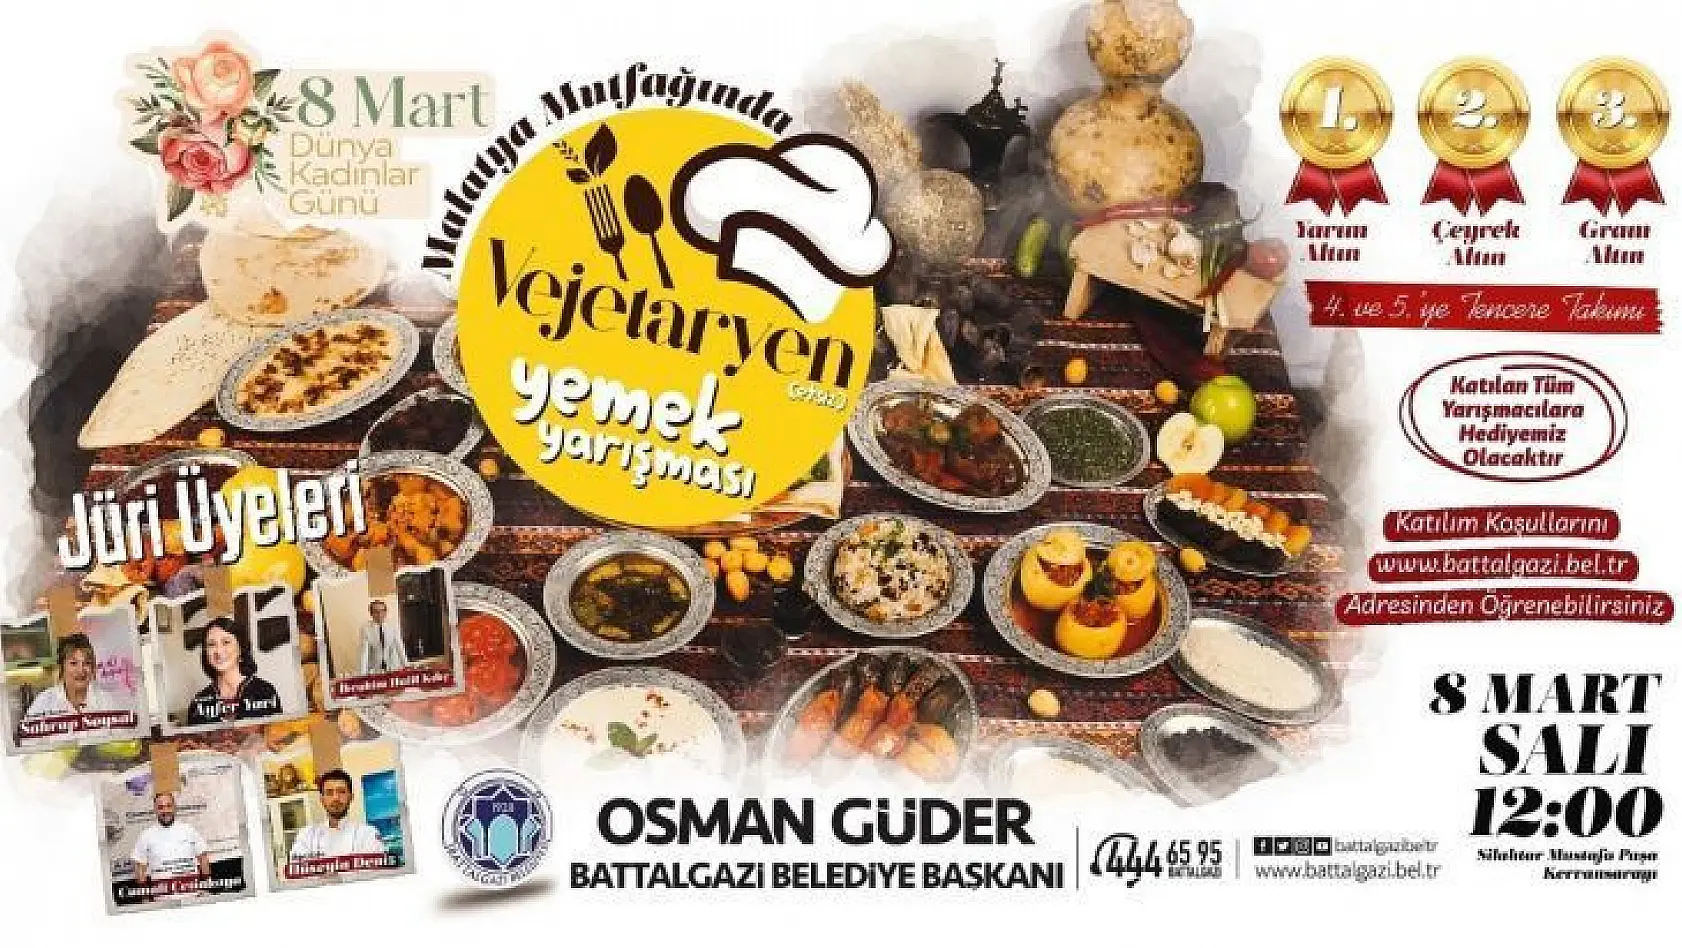 Malatya'nın vejetaryen mutfağı Battalgazi'de yarışacak